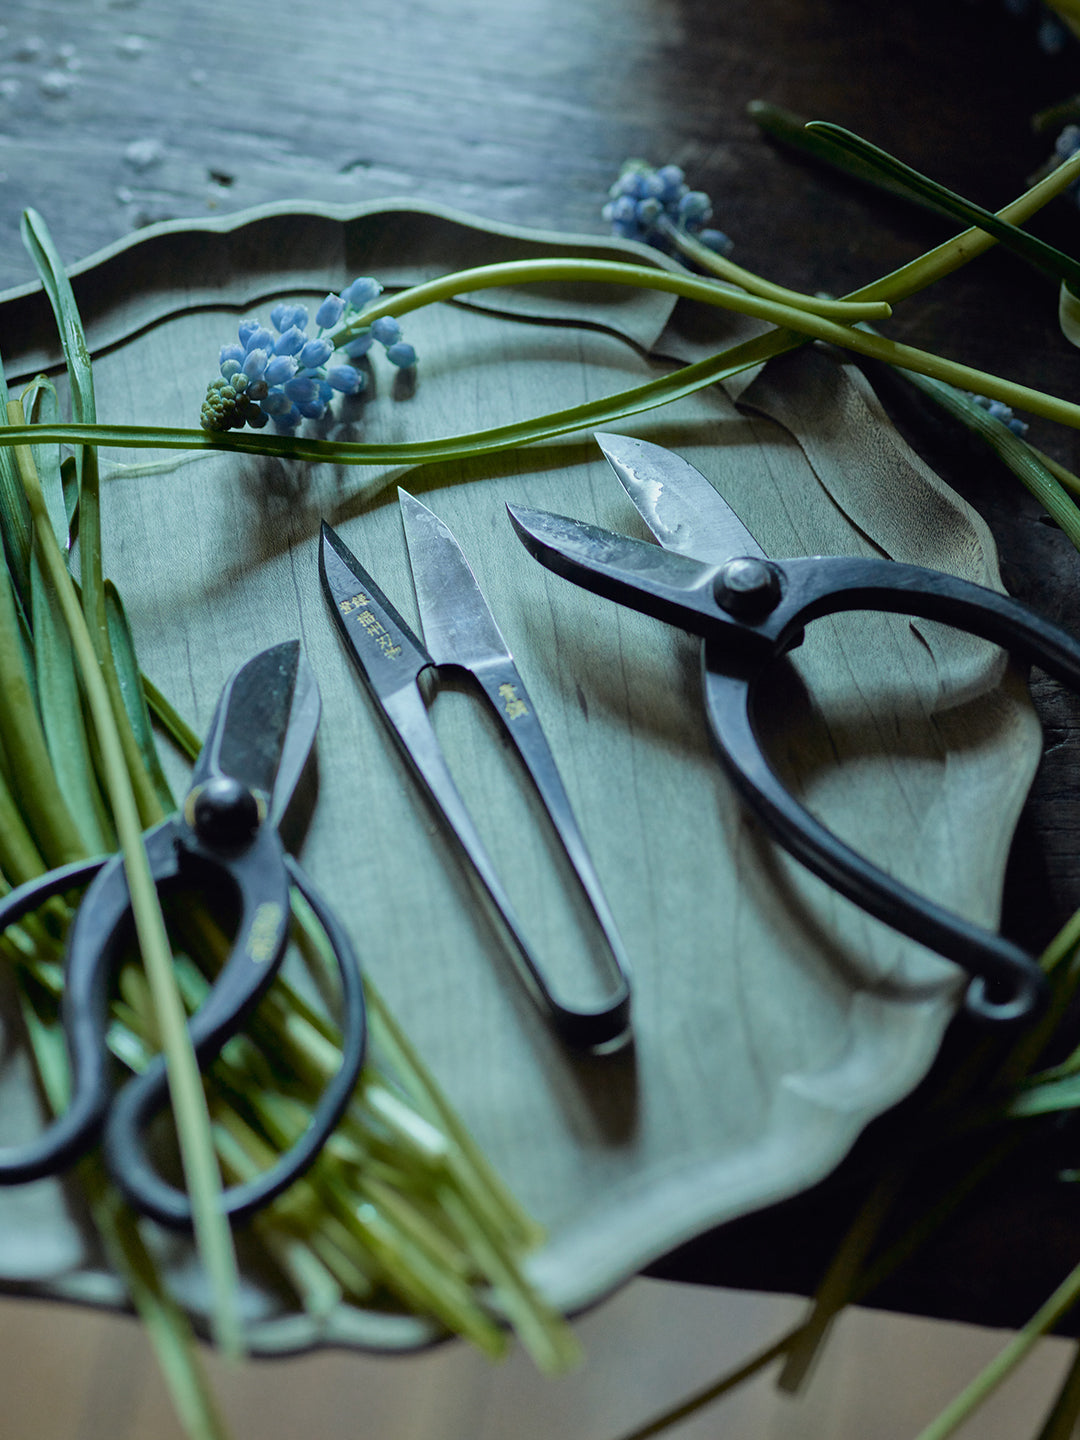 Ikenobo Hand-Forged Flower Scissors